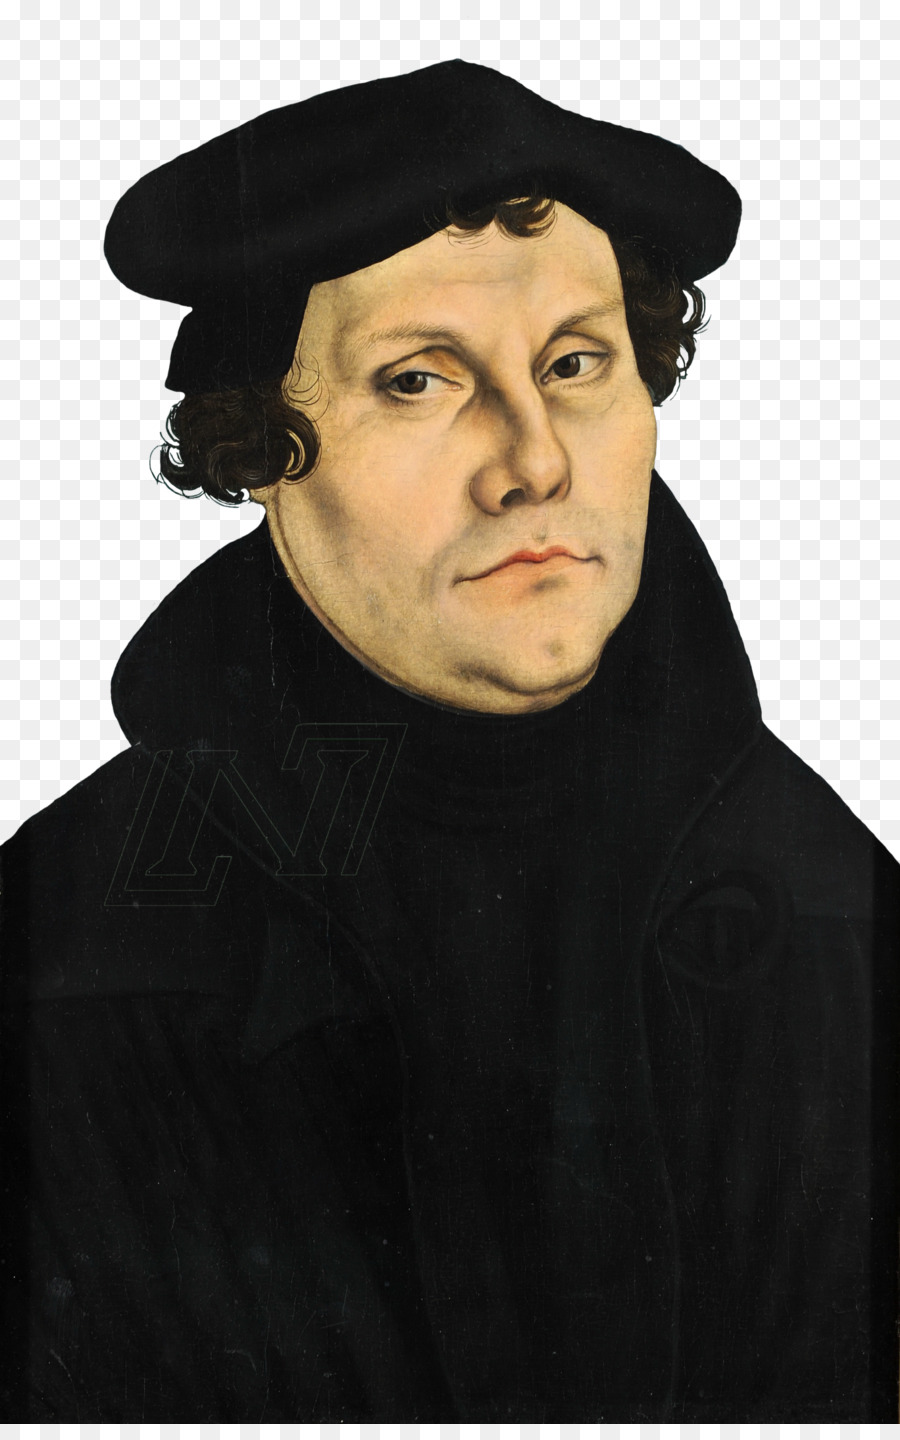 Martin Lutero e la Riforma novantacinque Tesi di Wittenberg Protestantesimo - altri